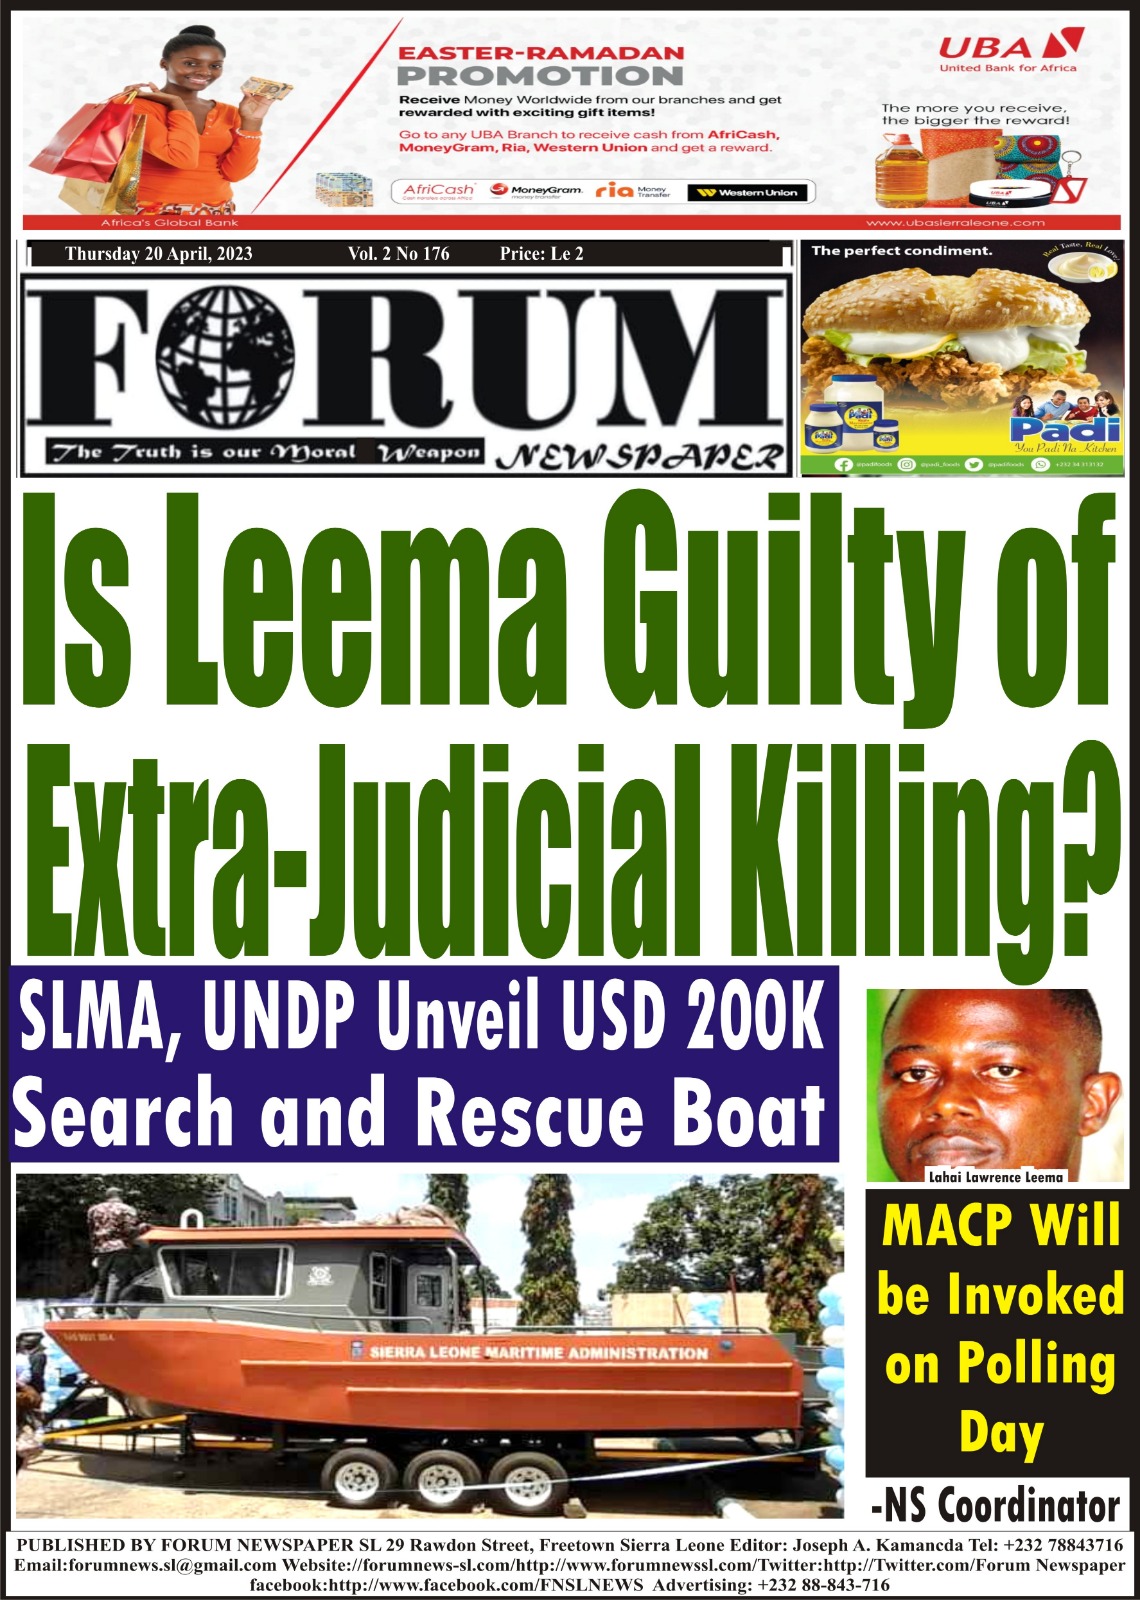 Is Leema Guilty of Extra-Judicial Killing?